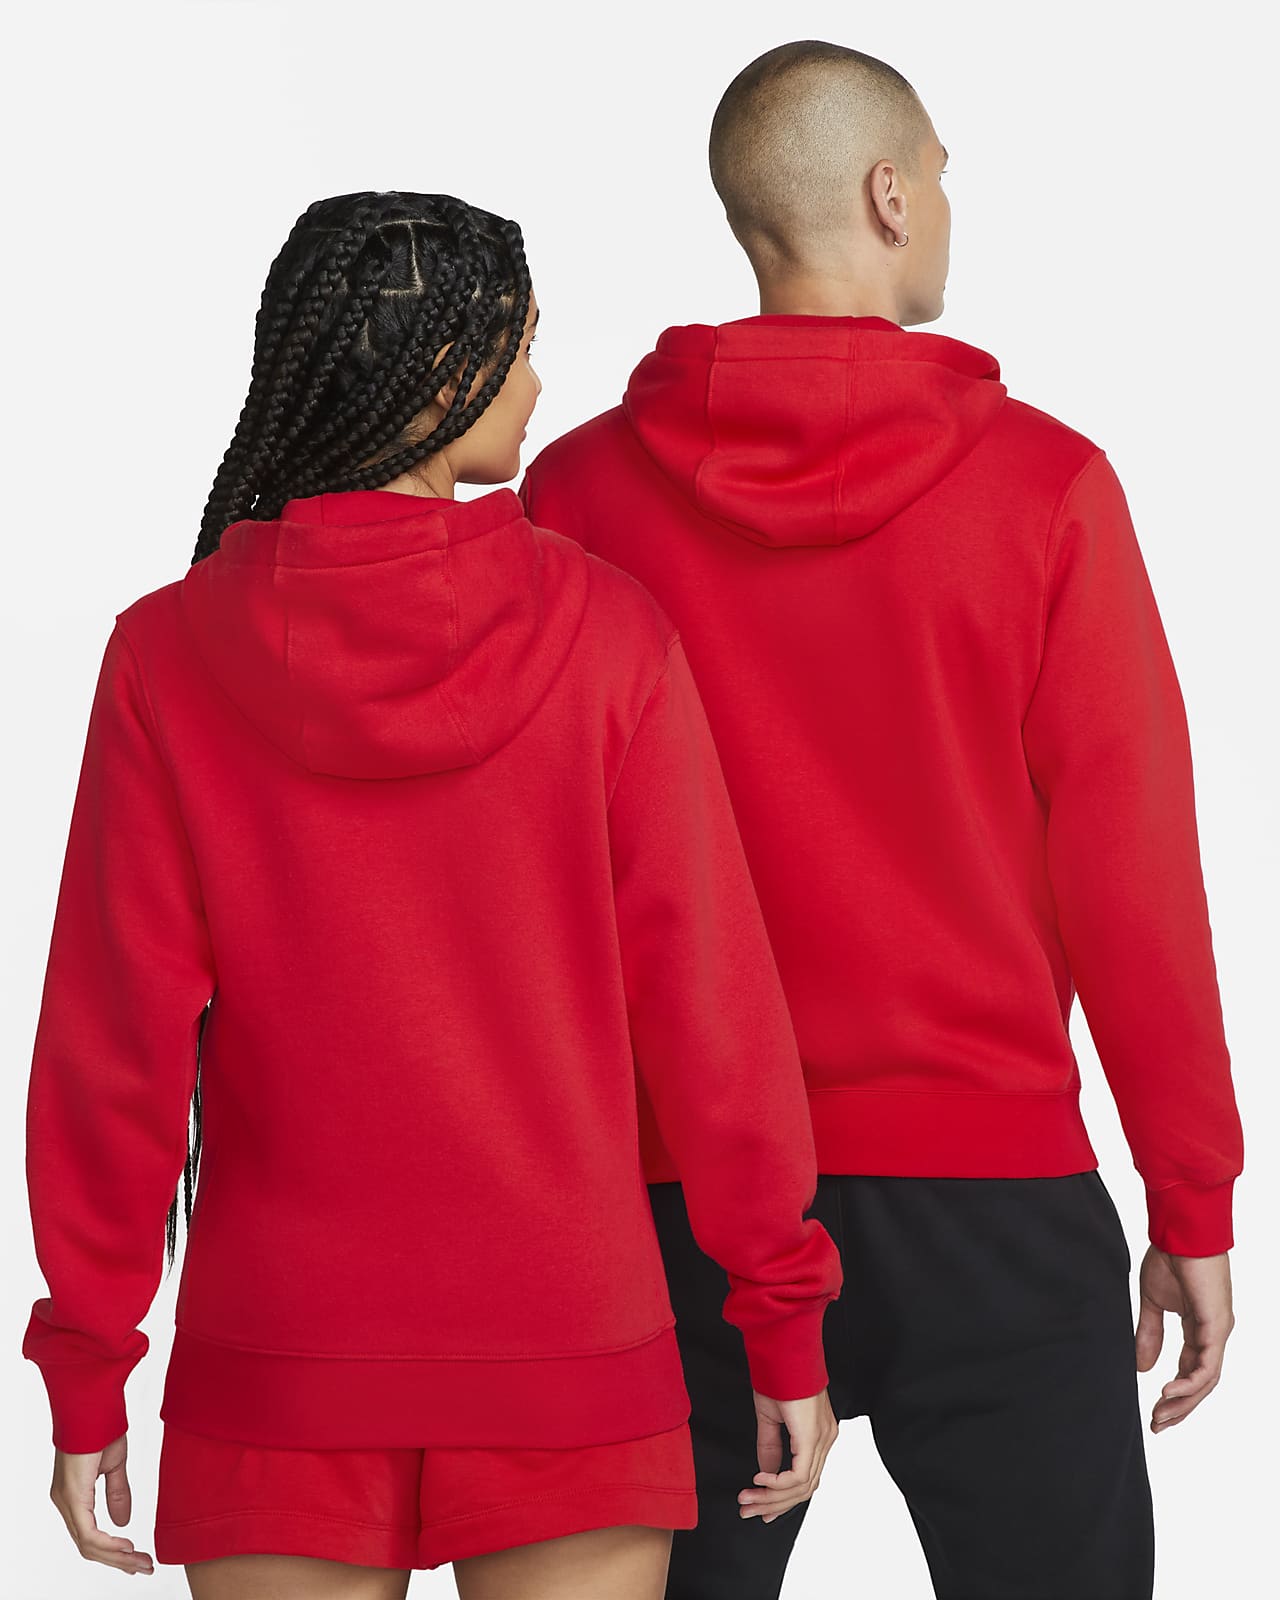 Sudadera roja con capucha y logo Club de Nike 